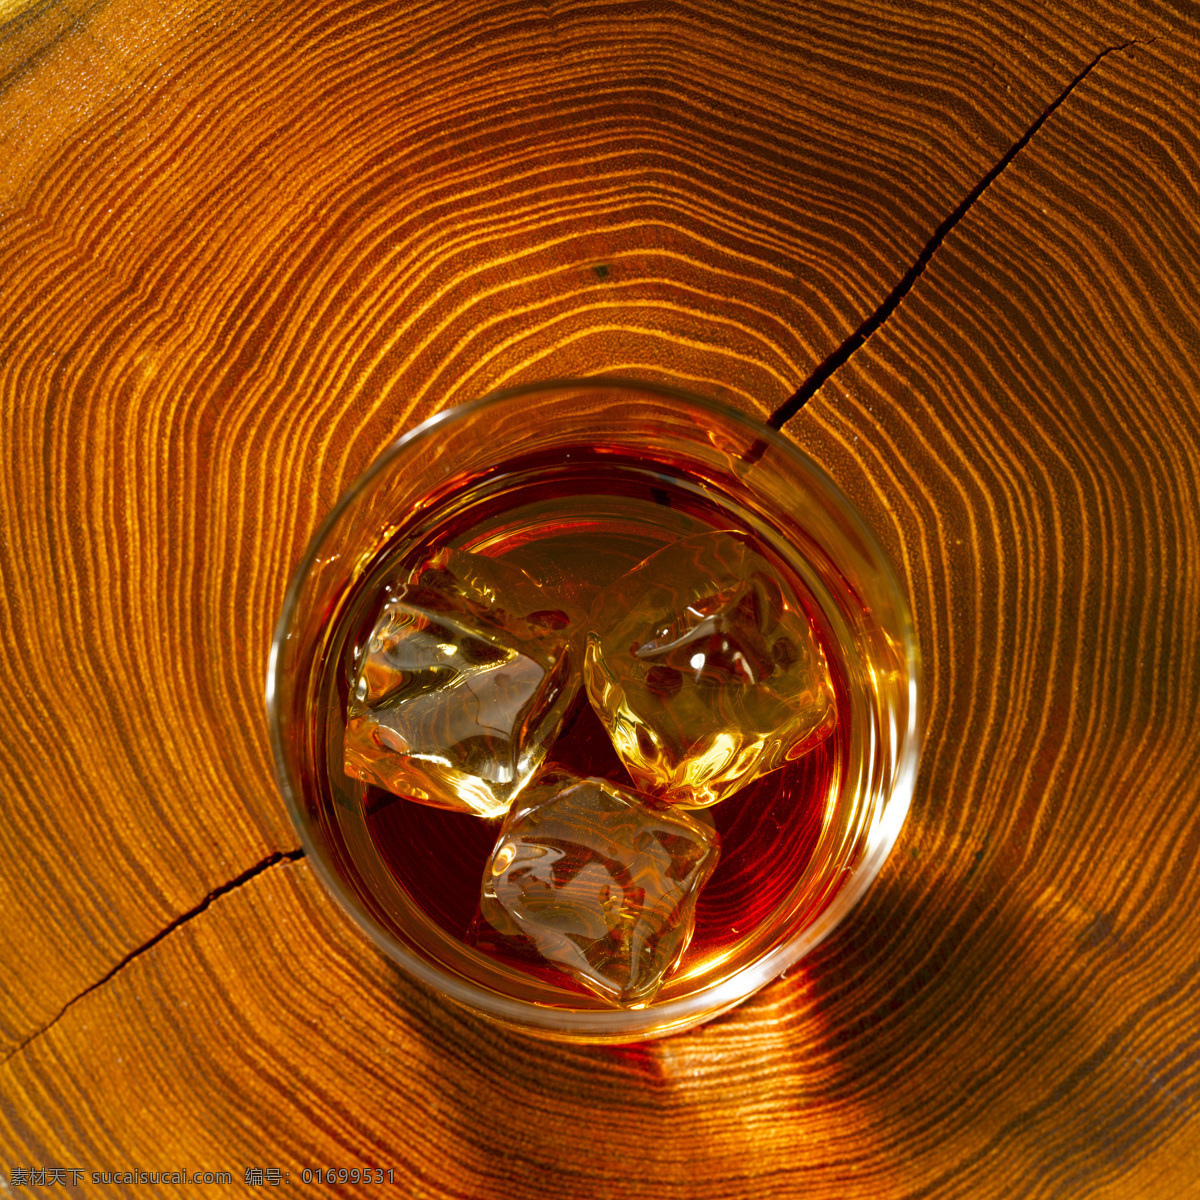 加 冰块 洋酒 加冰洋酒 威士忌 高档洋酒 美酒 酒水饮料 玻璃酒杯 杯子 酒类图片 餐饮美食